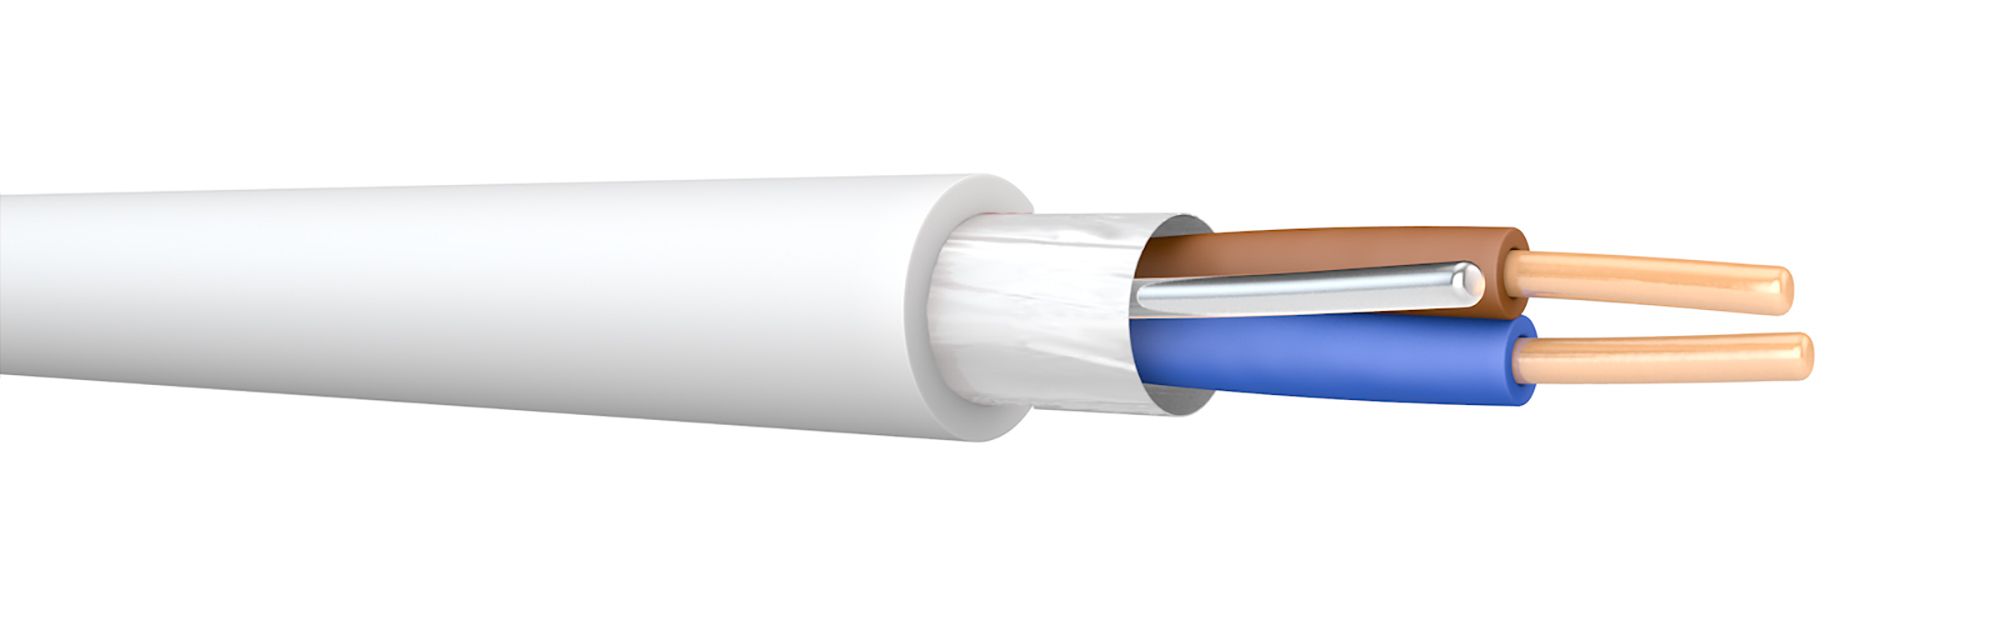 Prysmian FP200 White 2 core Fire resistant cable, 1.5mm² x 50m